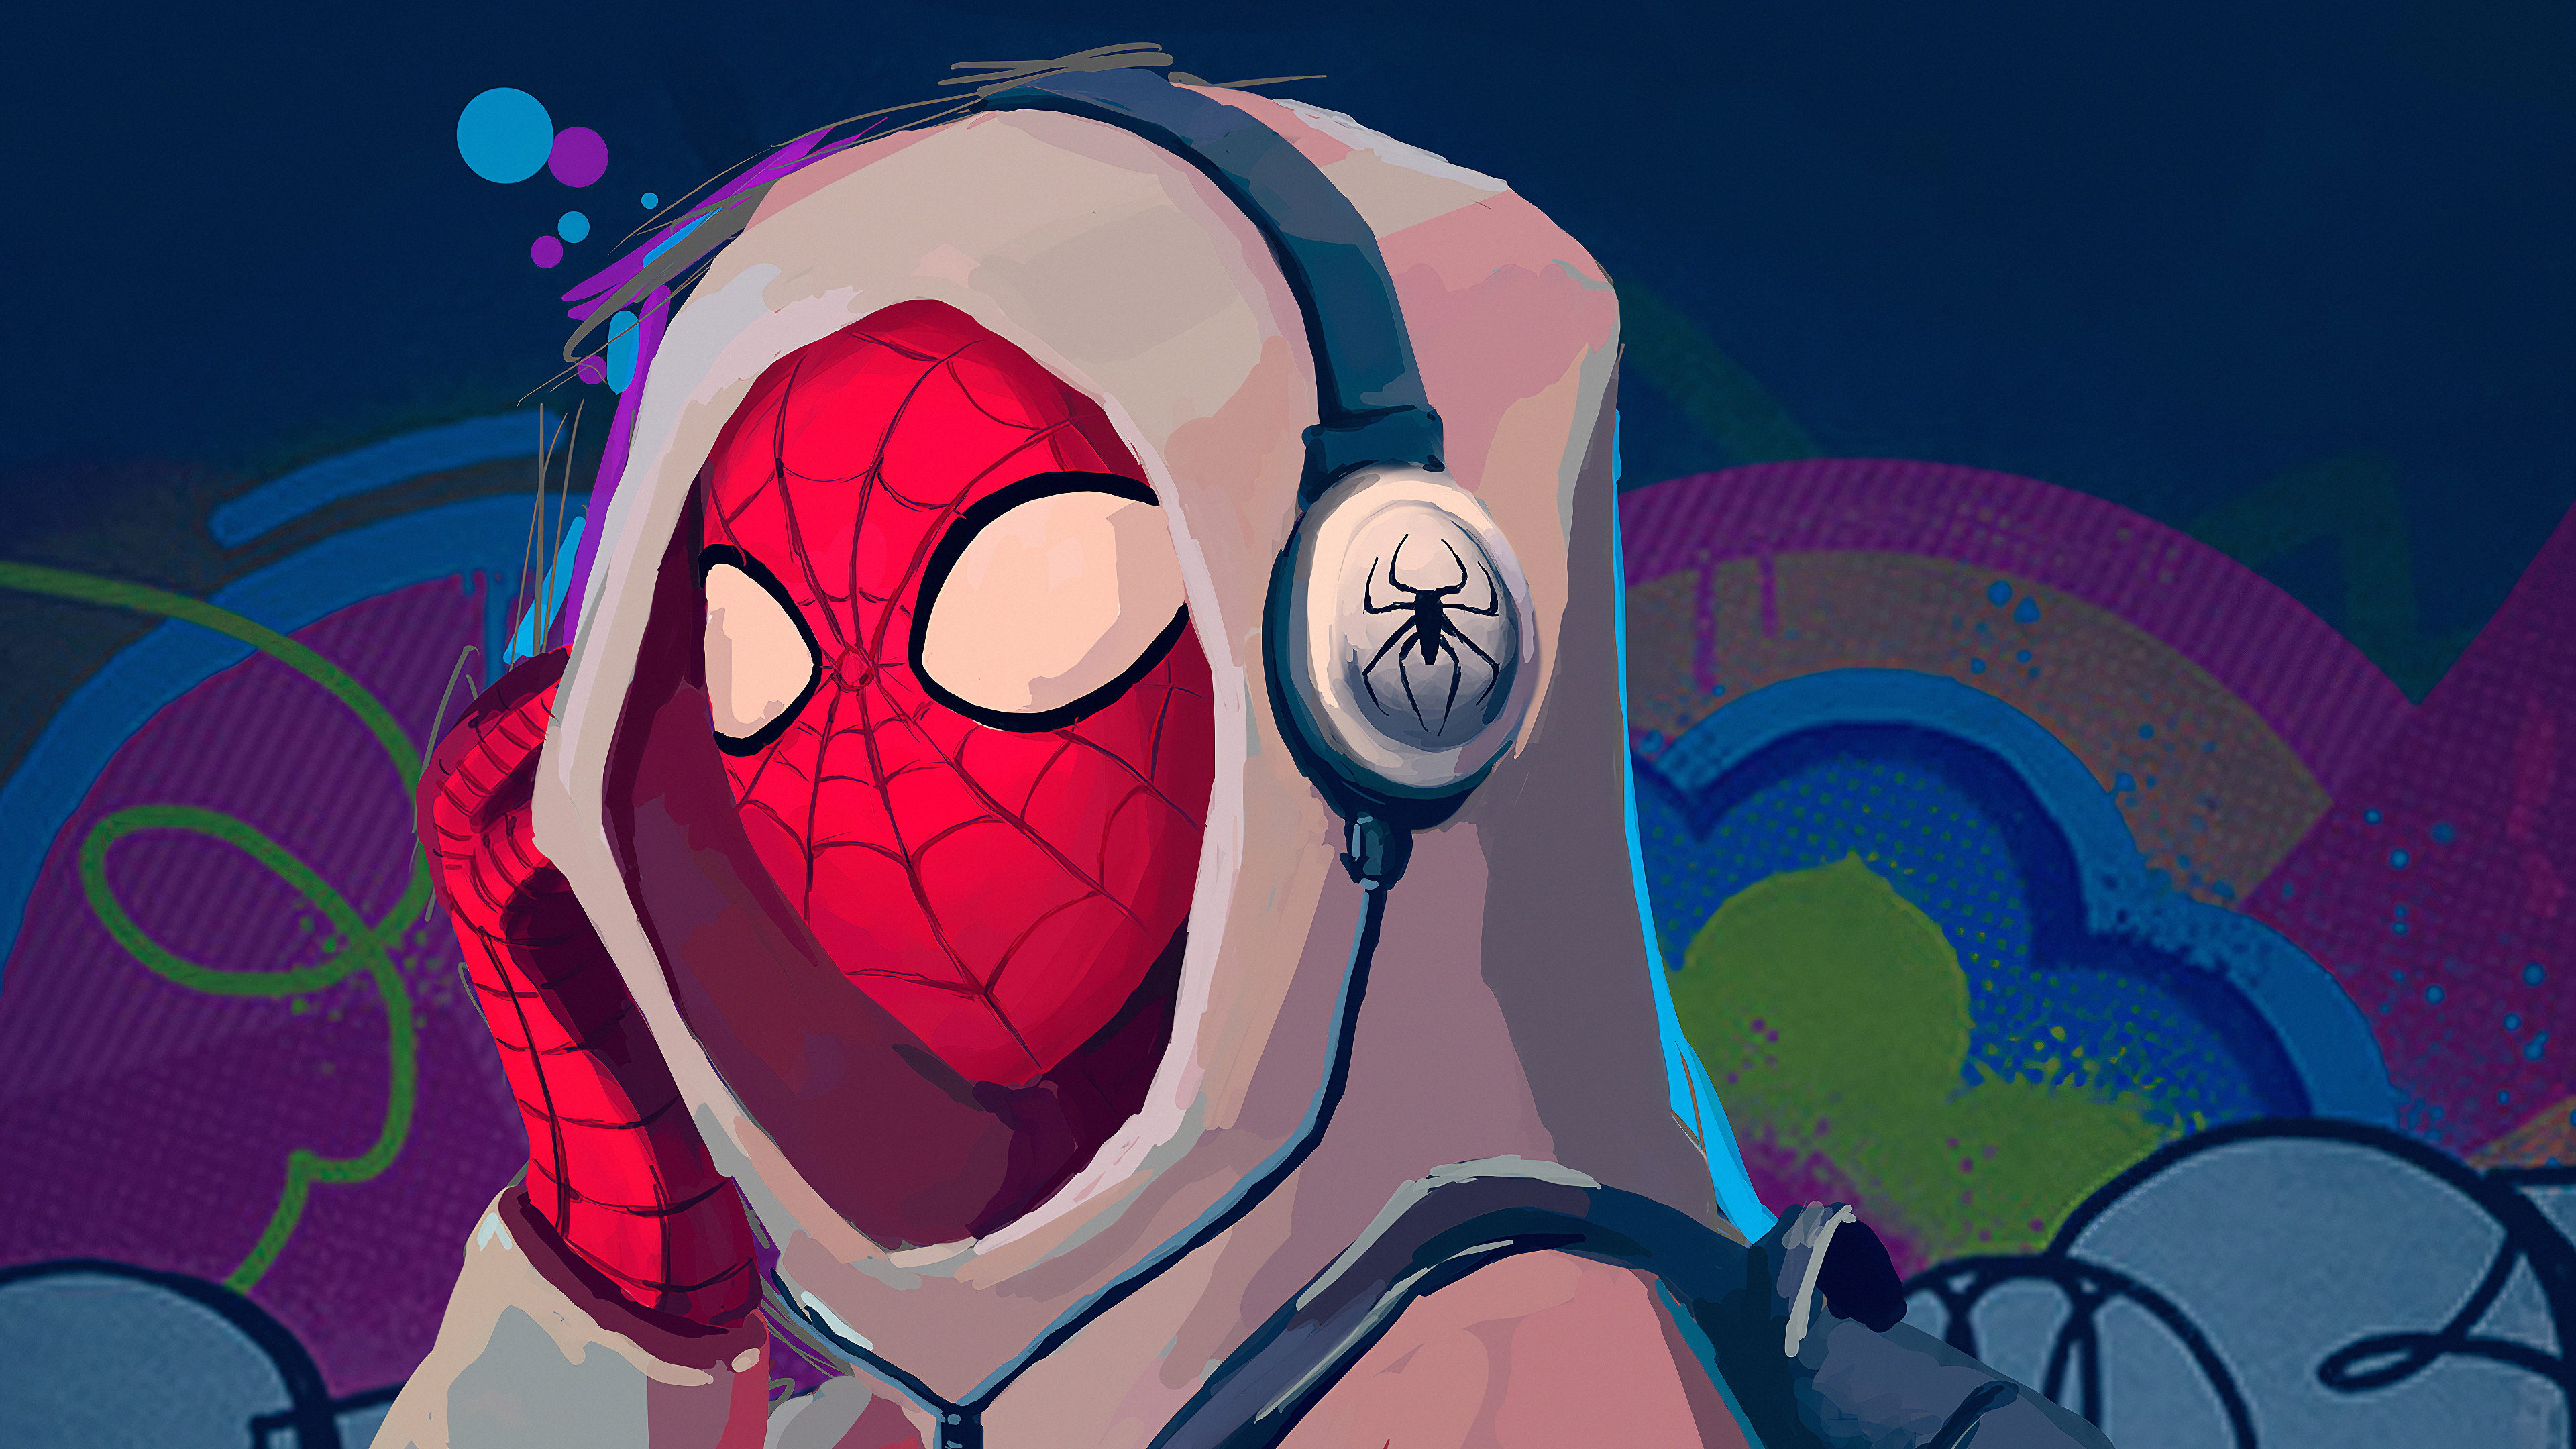 Spider-Man 4k Ultra HD Wallpaper by Julia Guseva